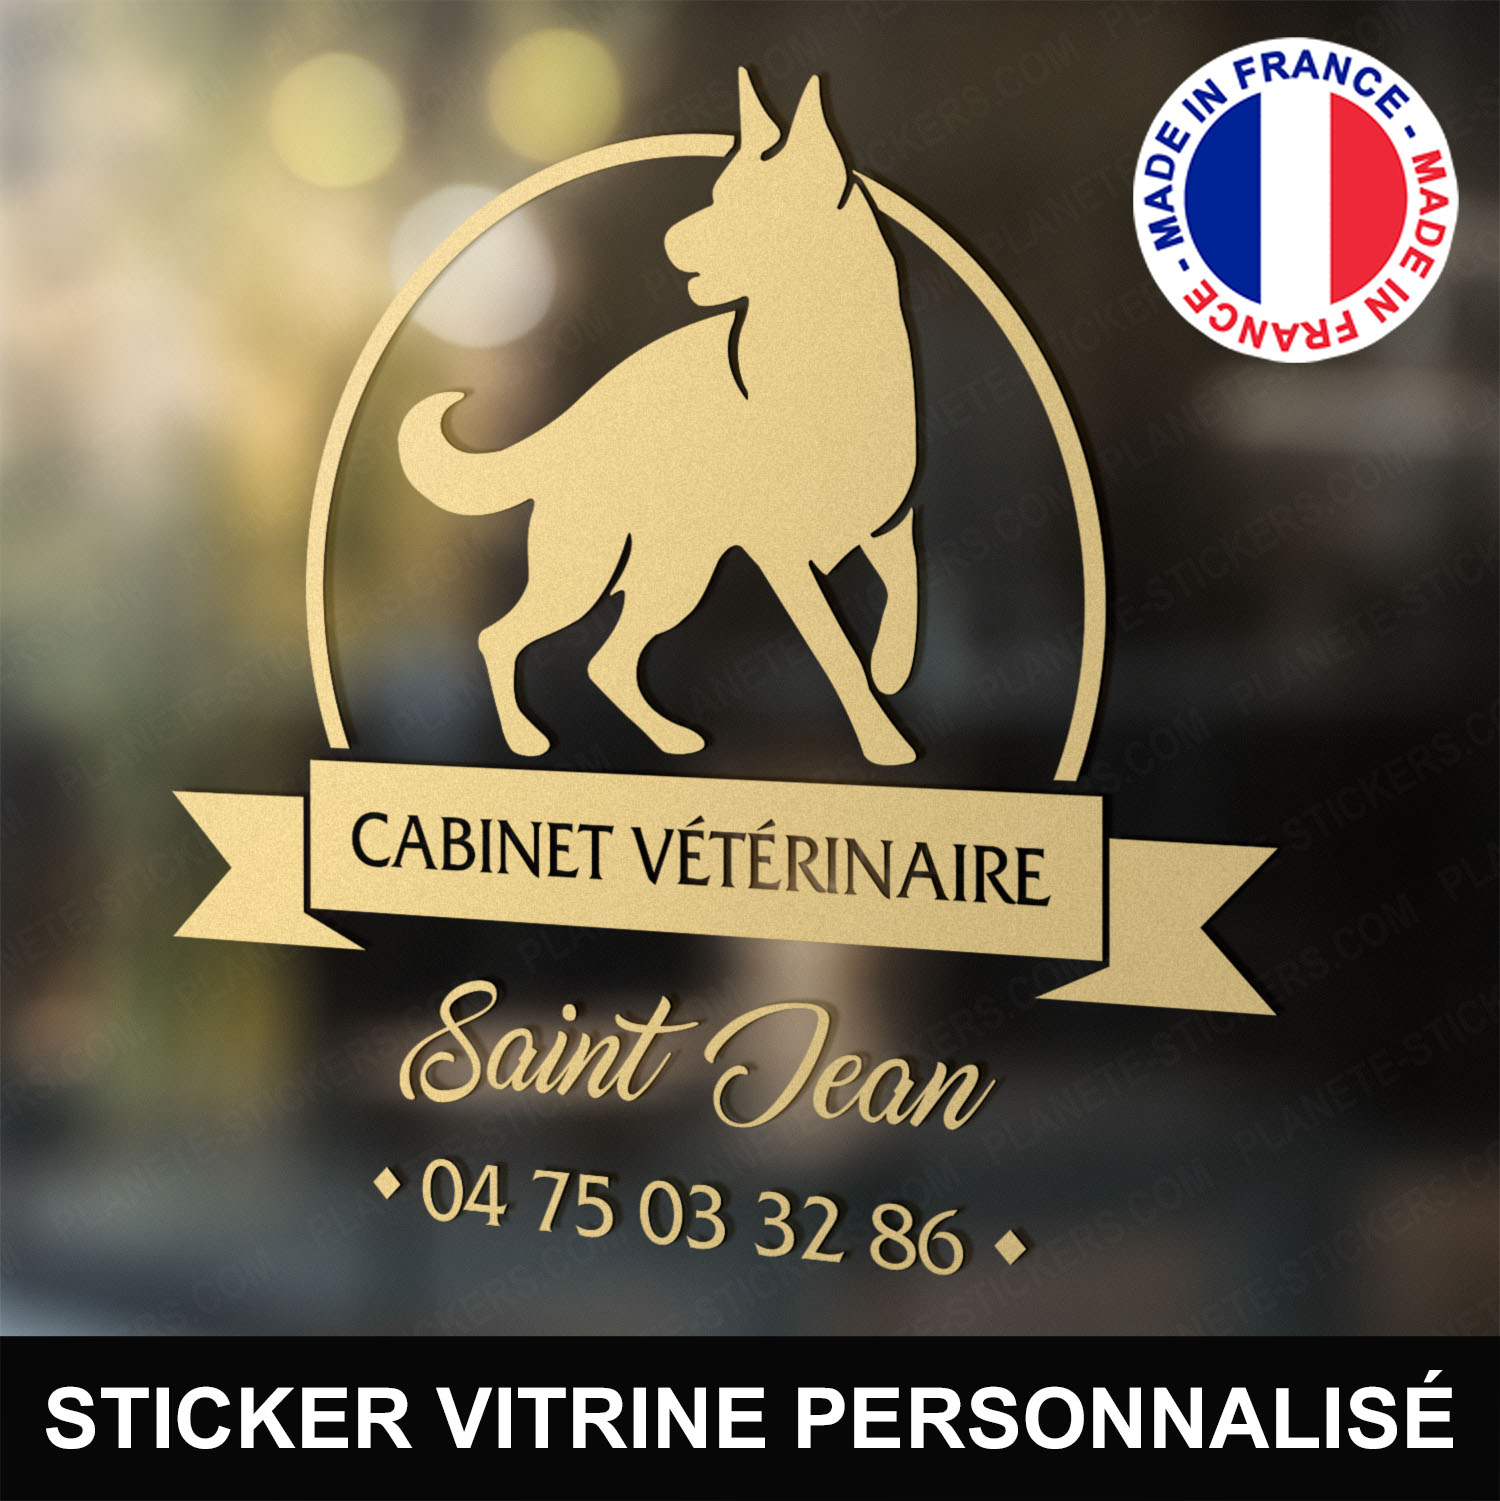 ref4veterinairevitrine-stickers-cabinet-vétérinaire-vitrine-sticker-personnalisé-autocollant-pro-veterinaire-professionnel